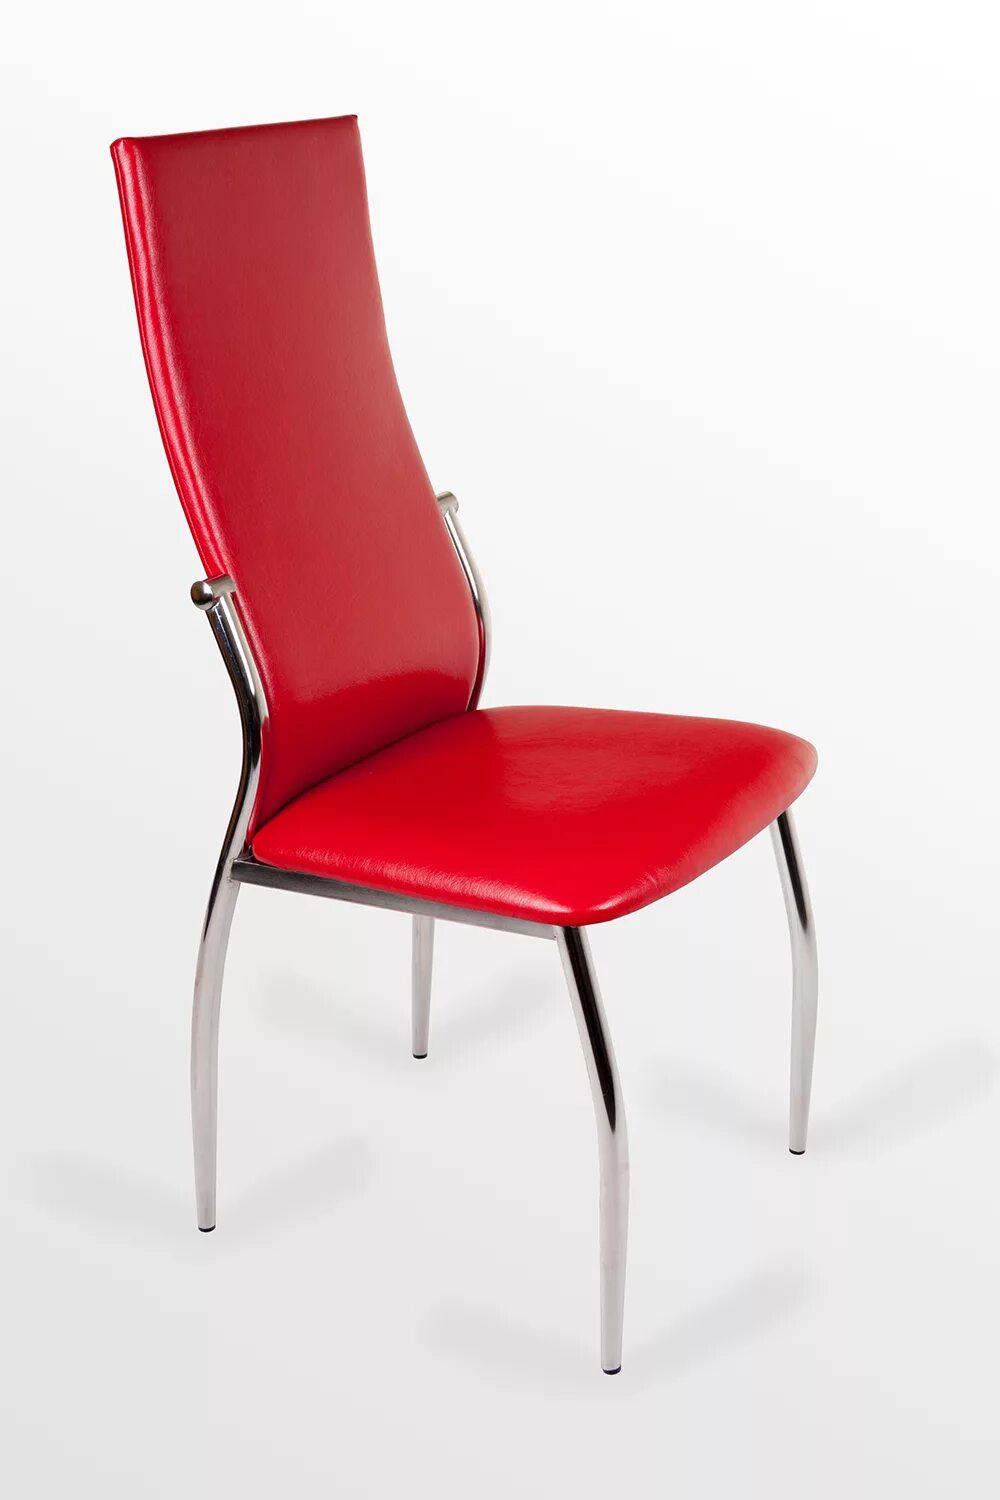 Стул в-610 Столбург. Кухонные стулья. Красные стулья для кухни. Стулья для кухни со спинкой. Купить стулья в тамбове